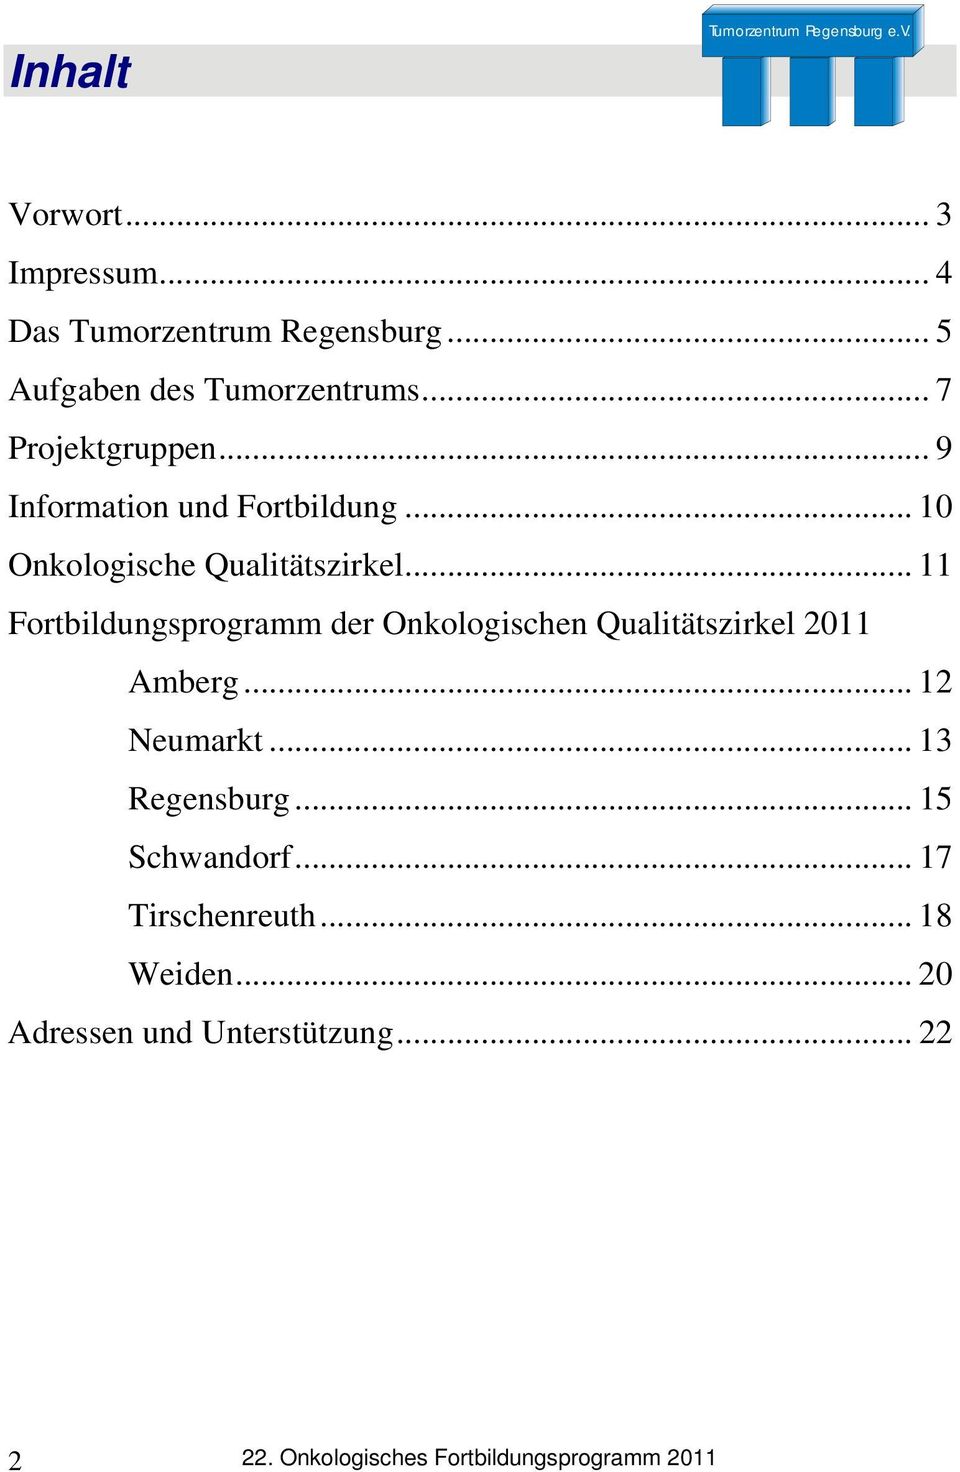 .. 11 Fortbildungsprogramm der Onkologischen Qualitätszirkel 2011 Amberg... 12 Neumarkt... 13 Regensburg.